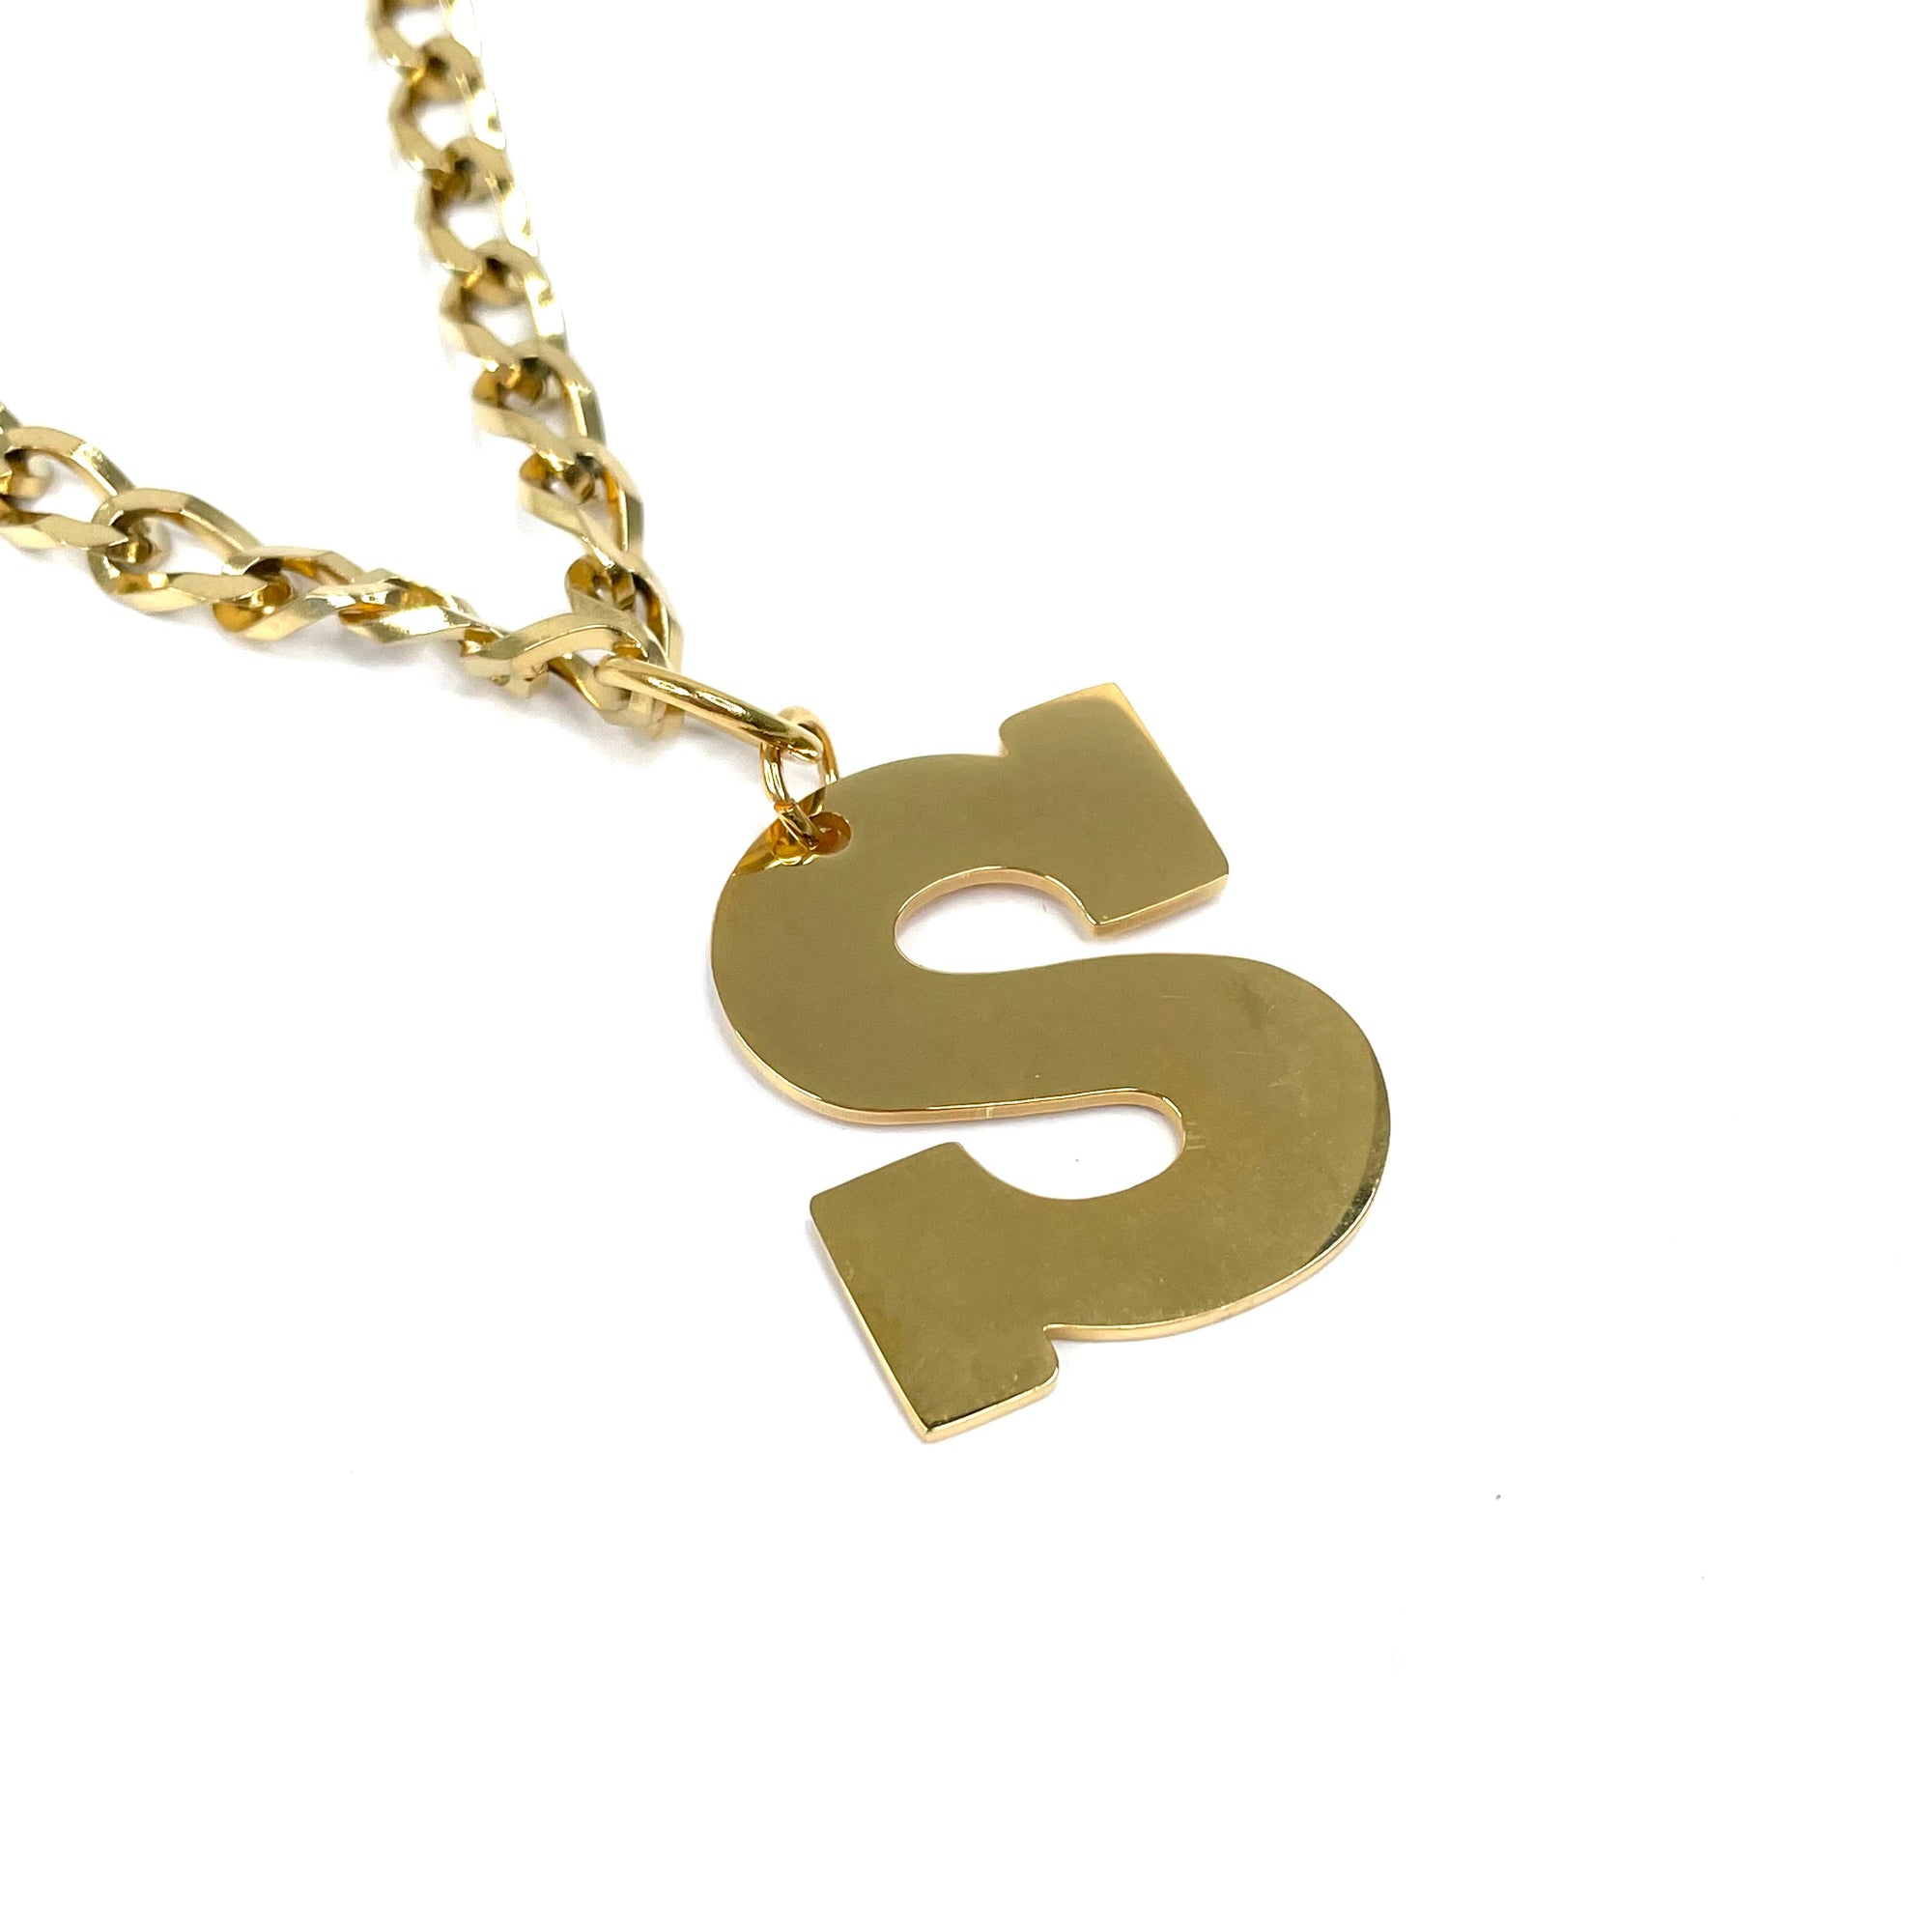 Lettering Legend Necklace Necklaces Cerese D, Inc. Gold S 